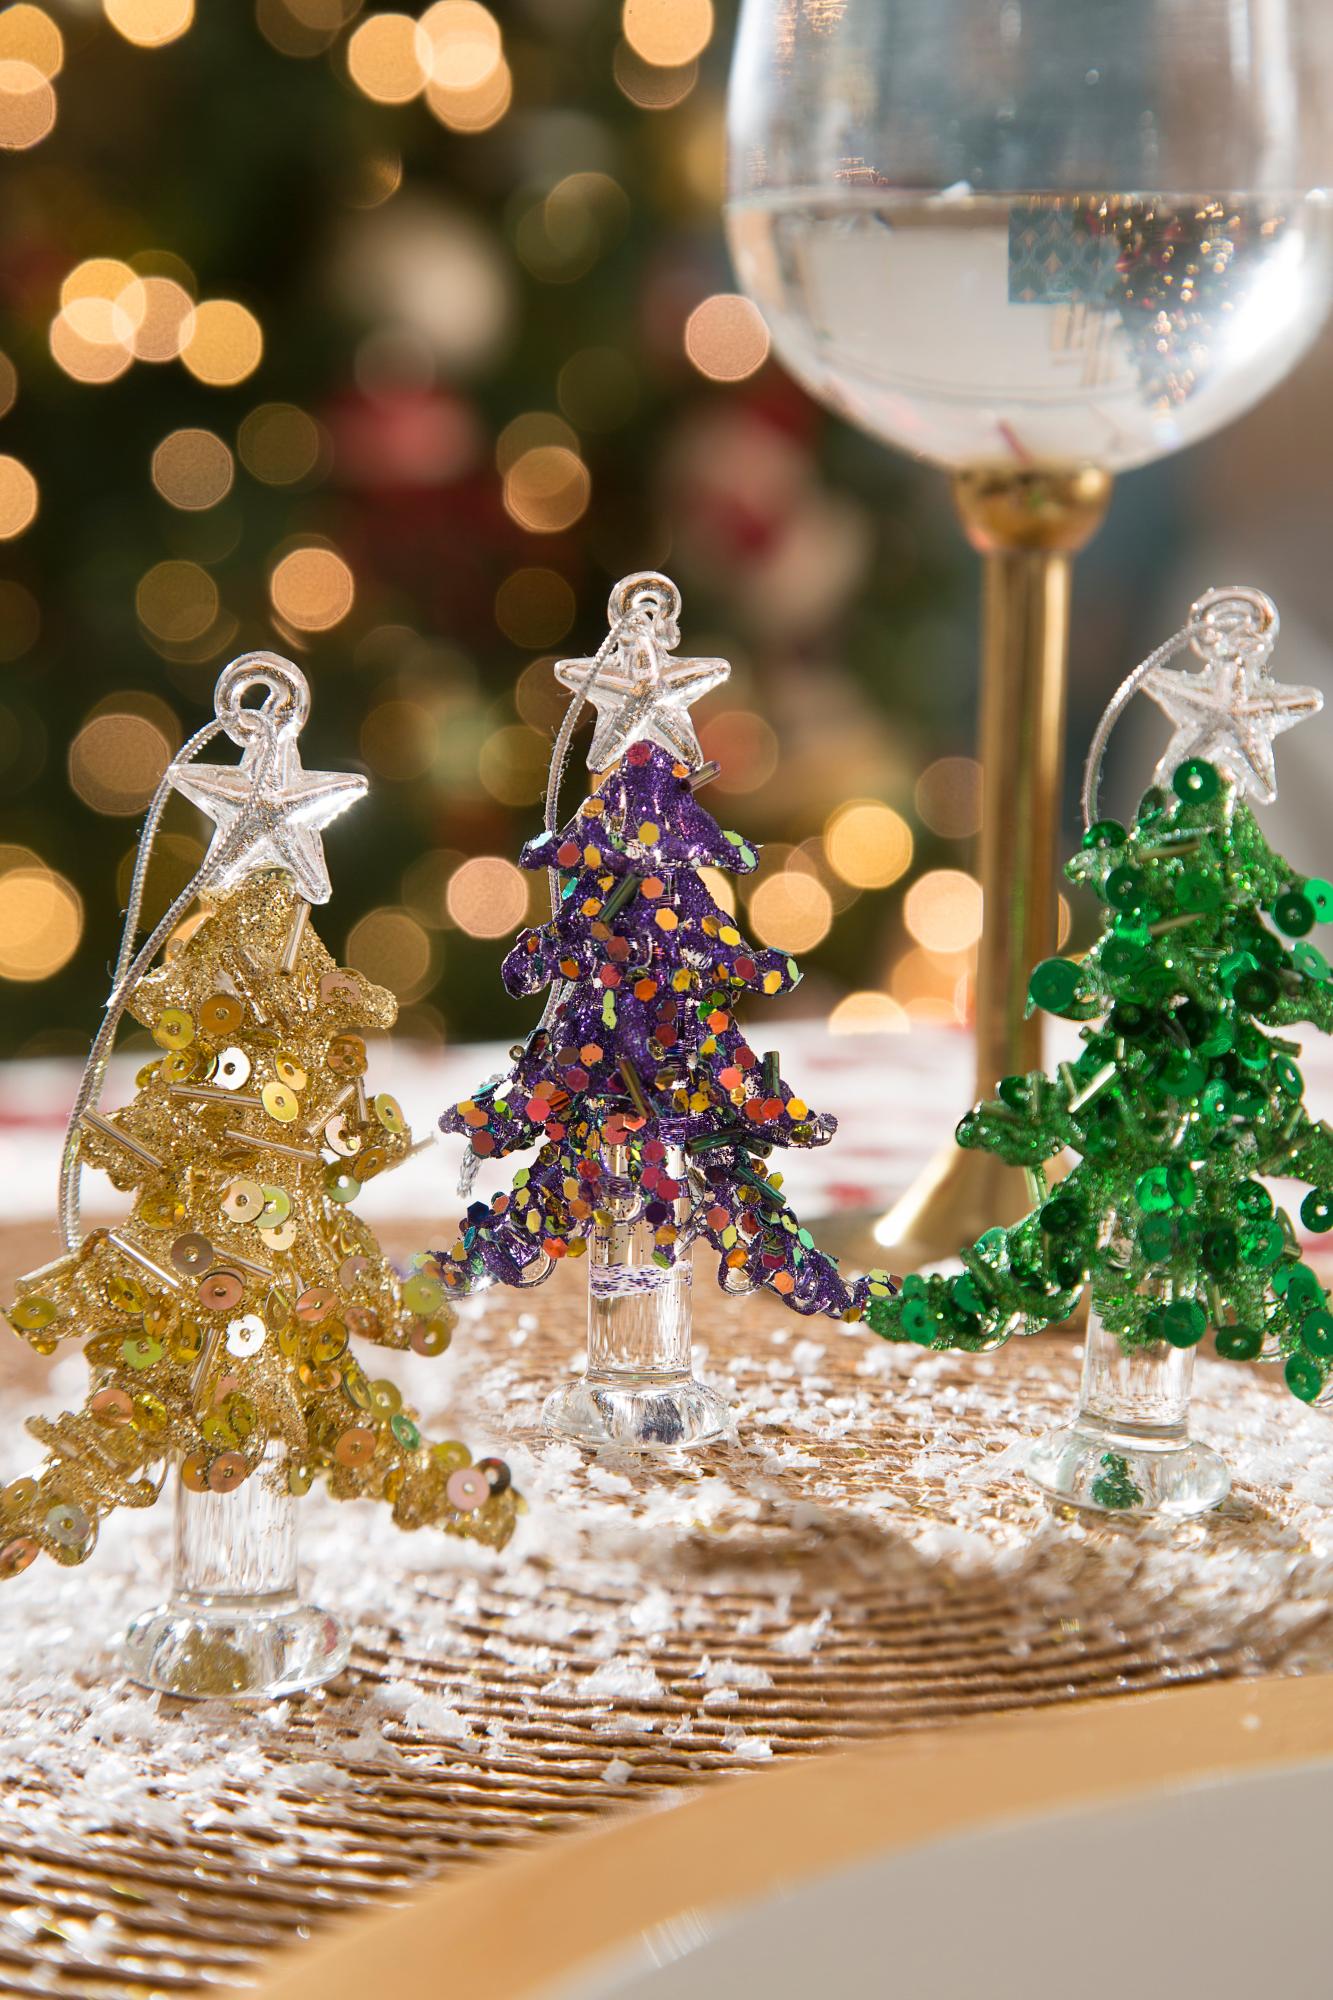  LEFERS - Adorno colgante de cristal para Navidad, decoración  brillante para árbol de Navidad, grabado de cristal, decoración del hogar,  regalos de Navidad, 1 pieza (C) : Hogar y Cocina